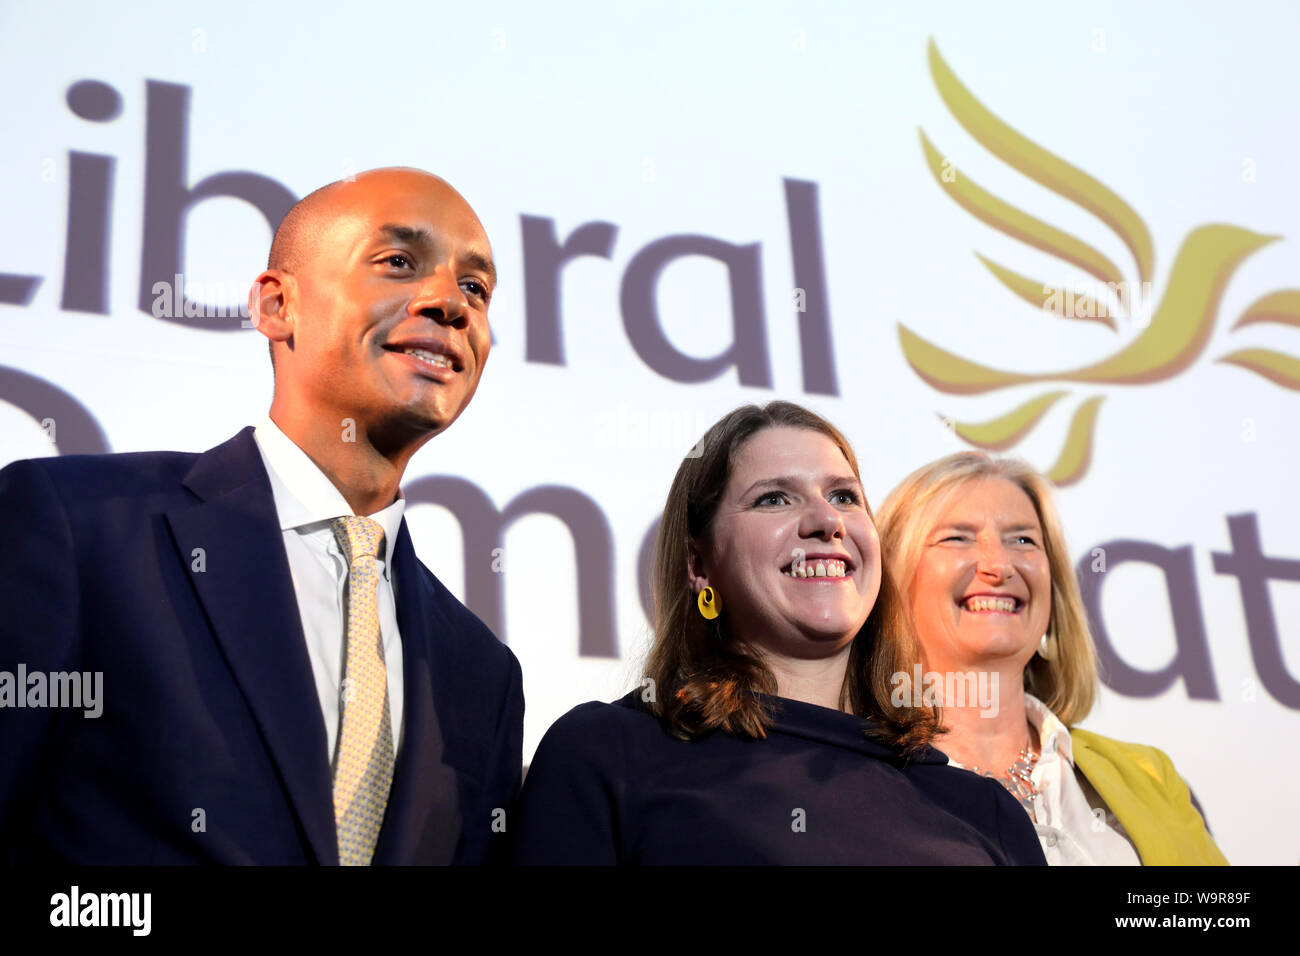 London / UK - Agosto 15, 2019: i liberali democratici leader Jo Swinson (C) pone con due reclute di recente il suo partito, MPs Chuka Umunna (L) e Sarah Wollaston (R), dopo la consegna di un discorso nel centro di Londra Foto Stock